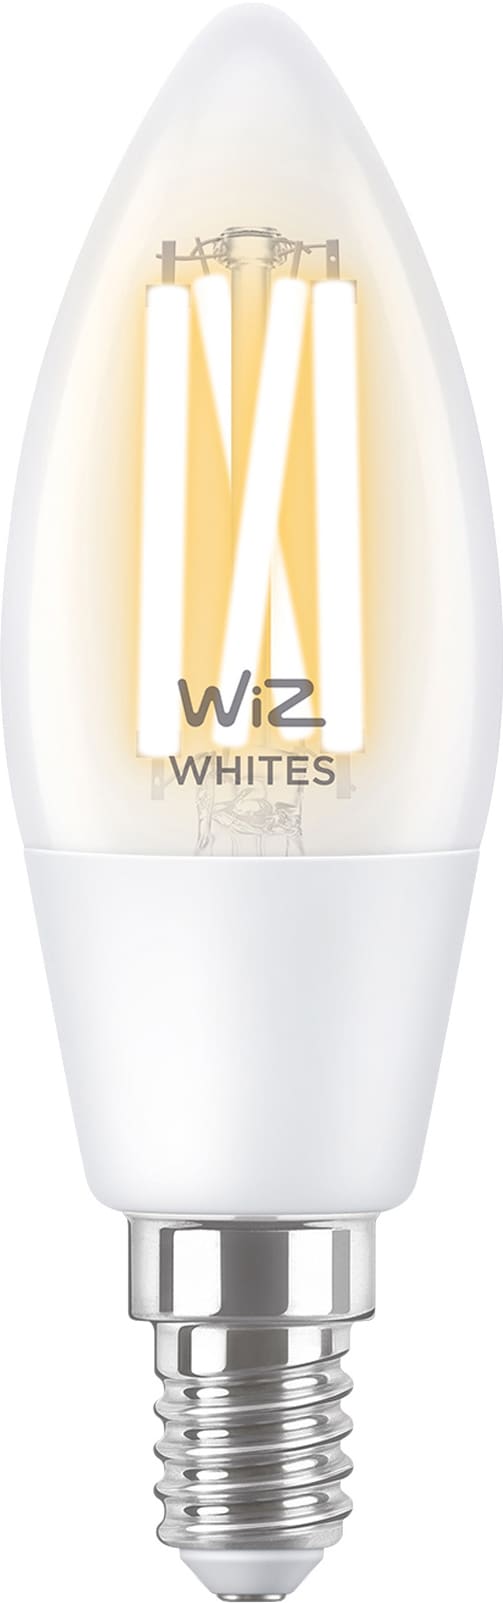 Wiz Light Mignon LED-pære 5W E14 871869978719600